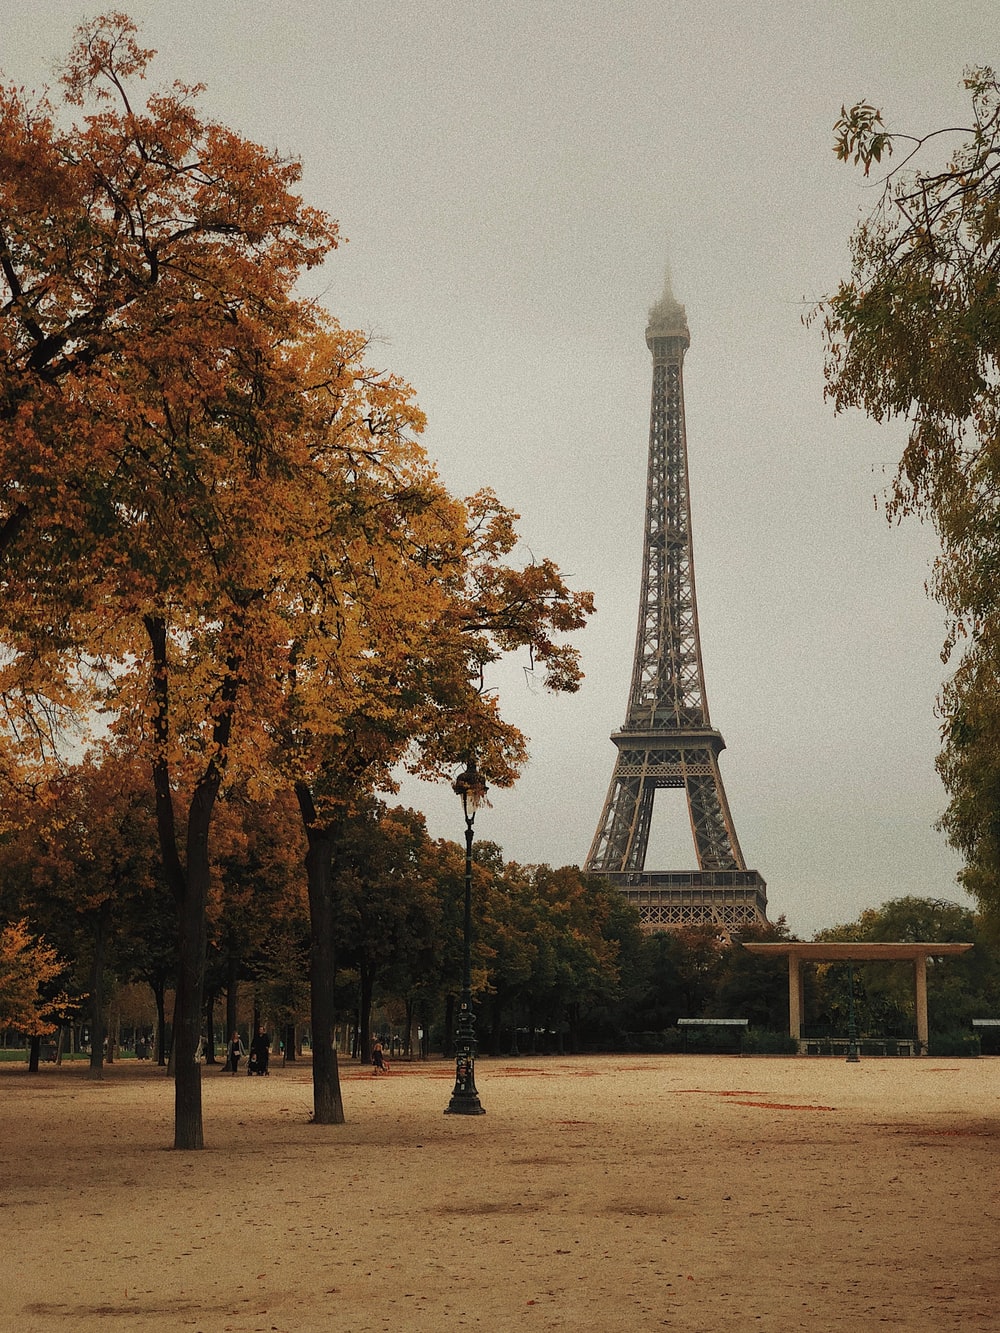 Paris Background For Photoshop - KibrisPDR